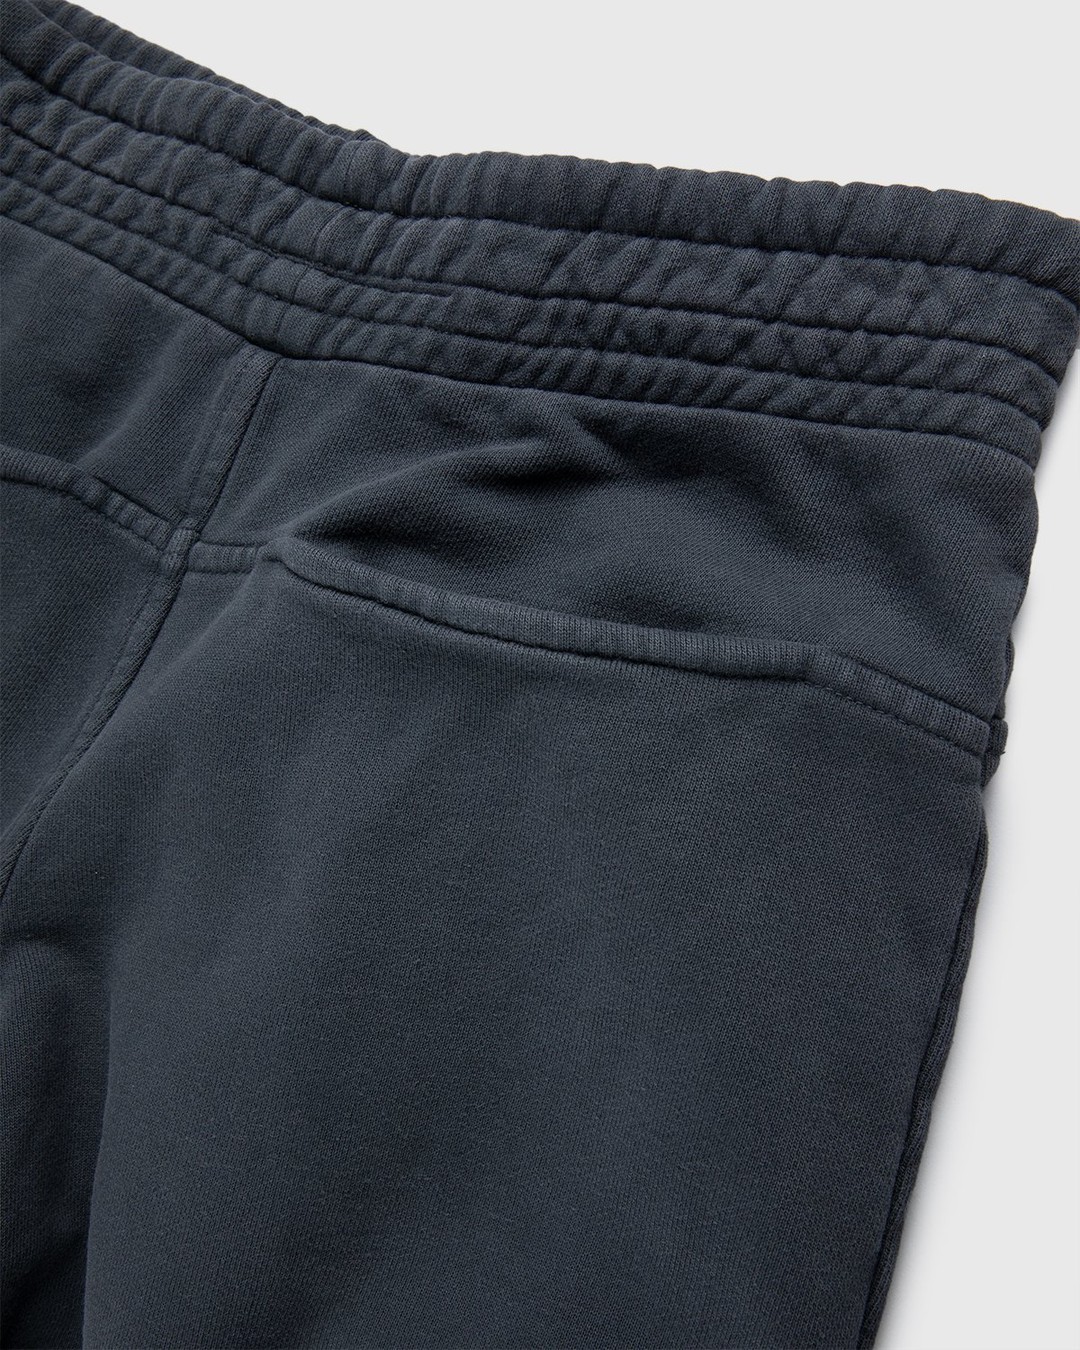 Darryl Brown – Gym Pants Vintage Black - Sweatpants - Black - Image 4